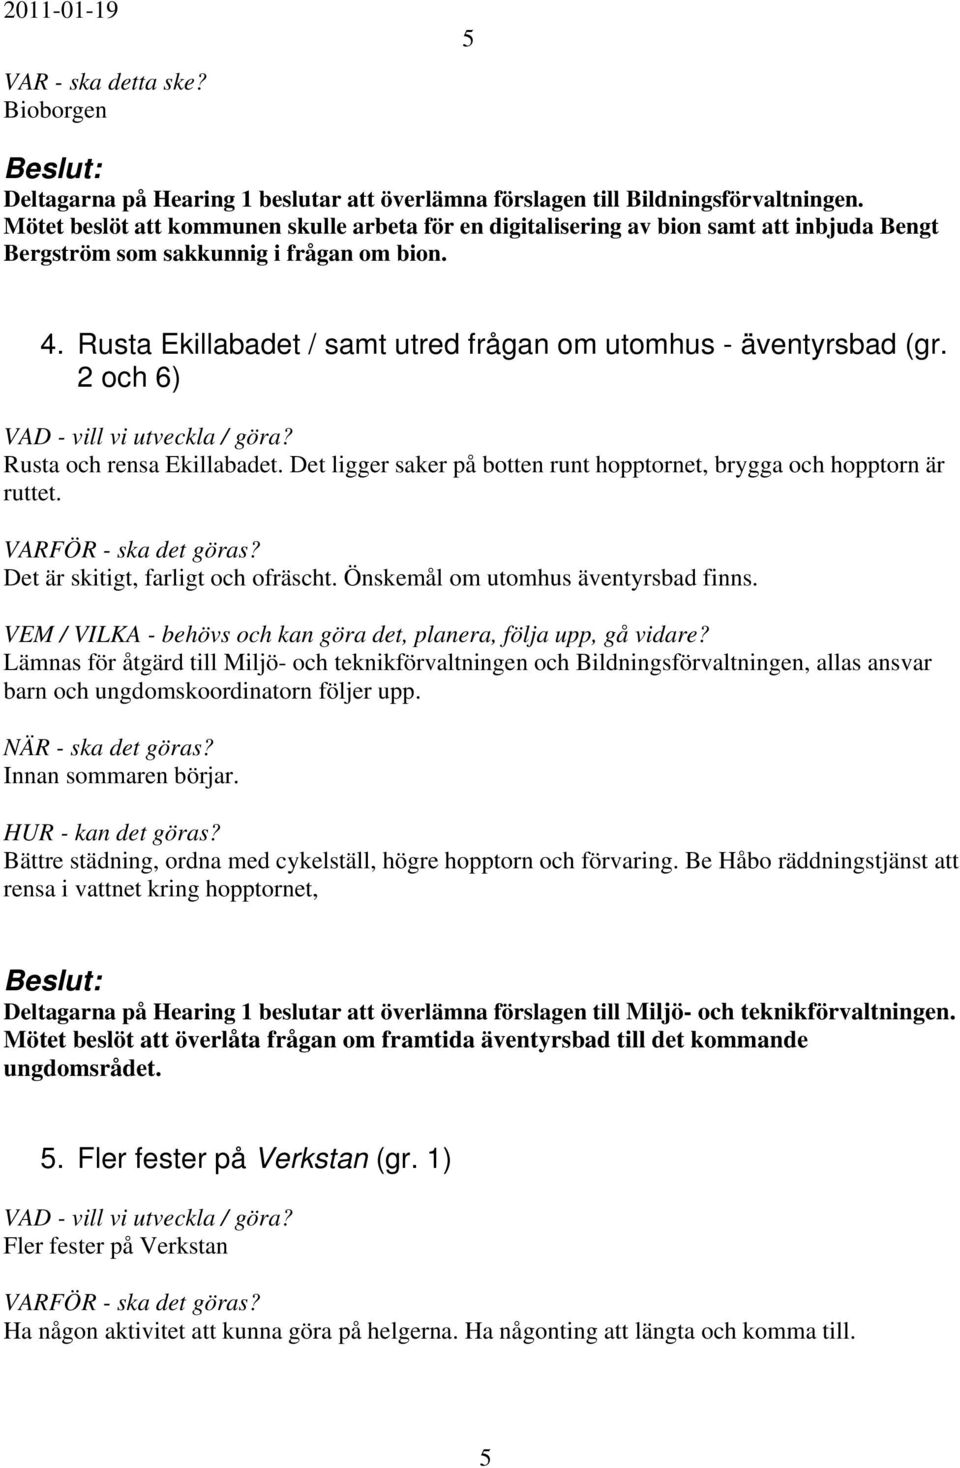 Rusta Ekillabadet / samt utred frågan om utomhus - äventyrsbad (gr. 2 och 6) Rusta och rensa Ekillabadet. Det ligger saker på botten runt hopptornet, brygga och hopptorn är ruttet.